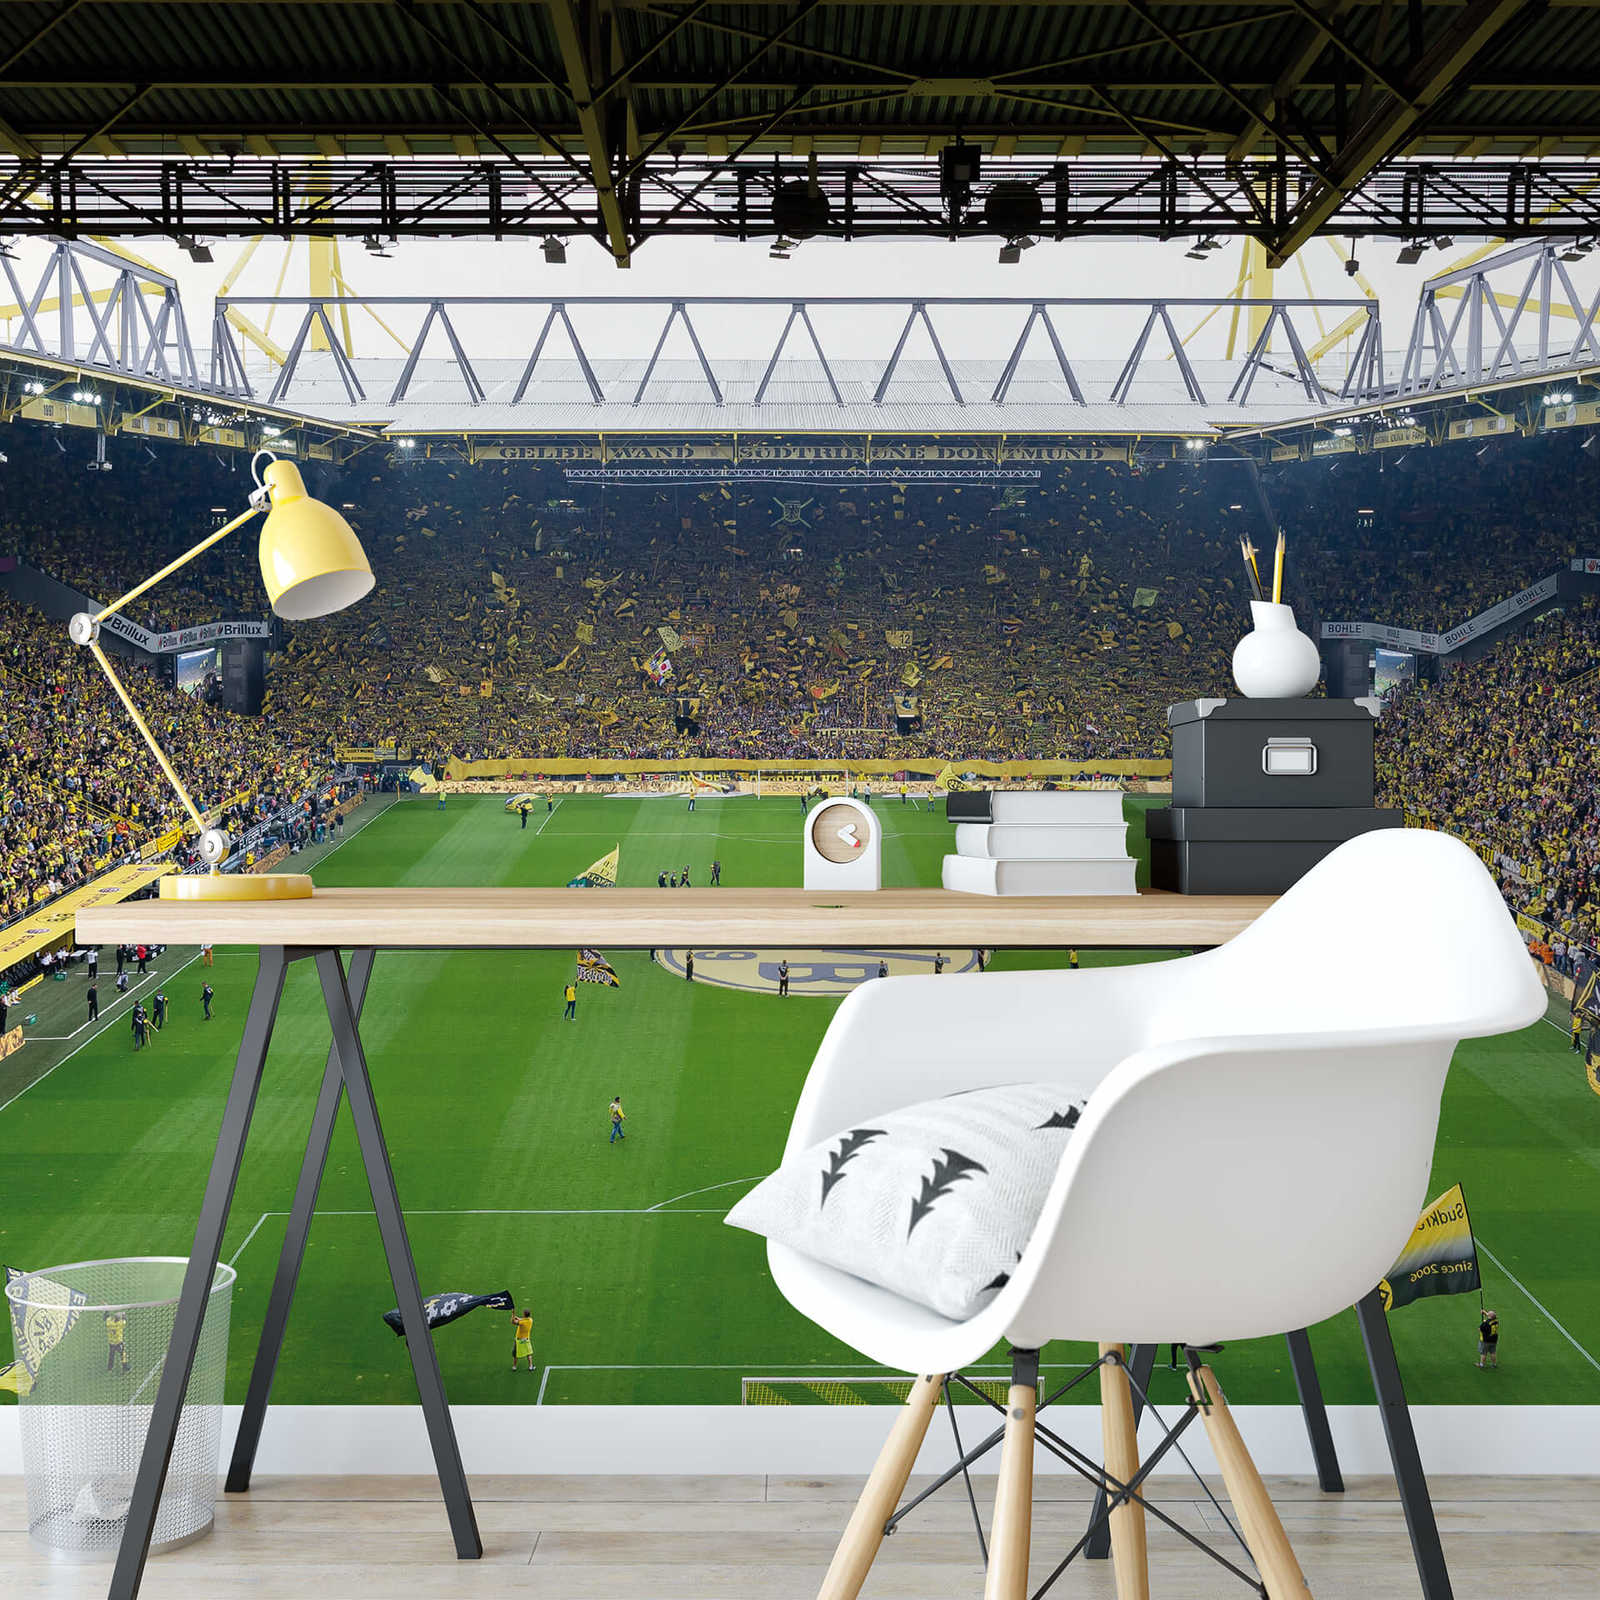             Fotomurali dello stadio del Borussia Dortmund con i cori
        